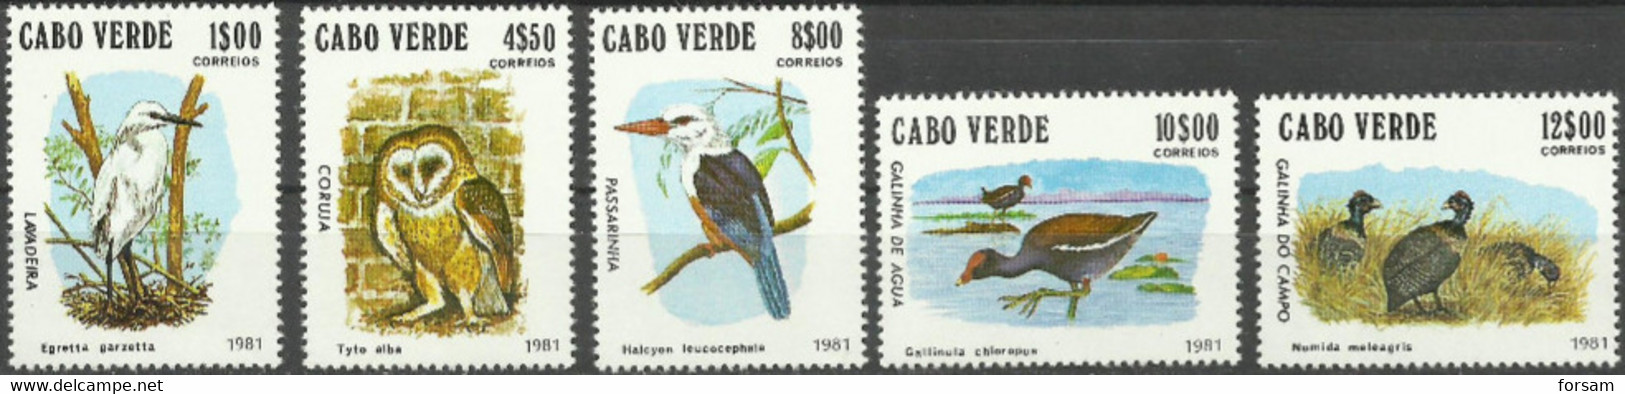 CAPE VERDE..1981..Michel # 445-449...MNH...MiCV - 12 Euro. - Kaapverdische Eilanden